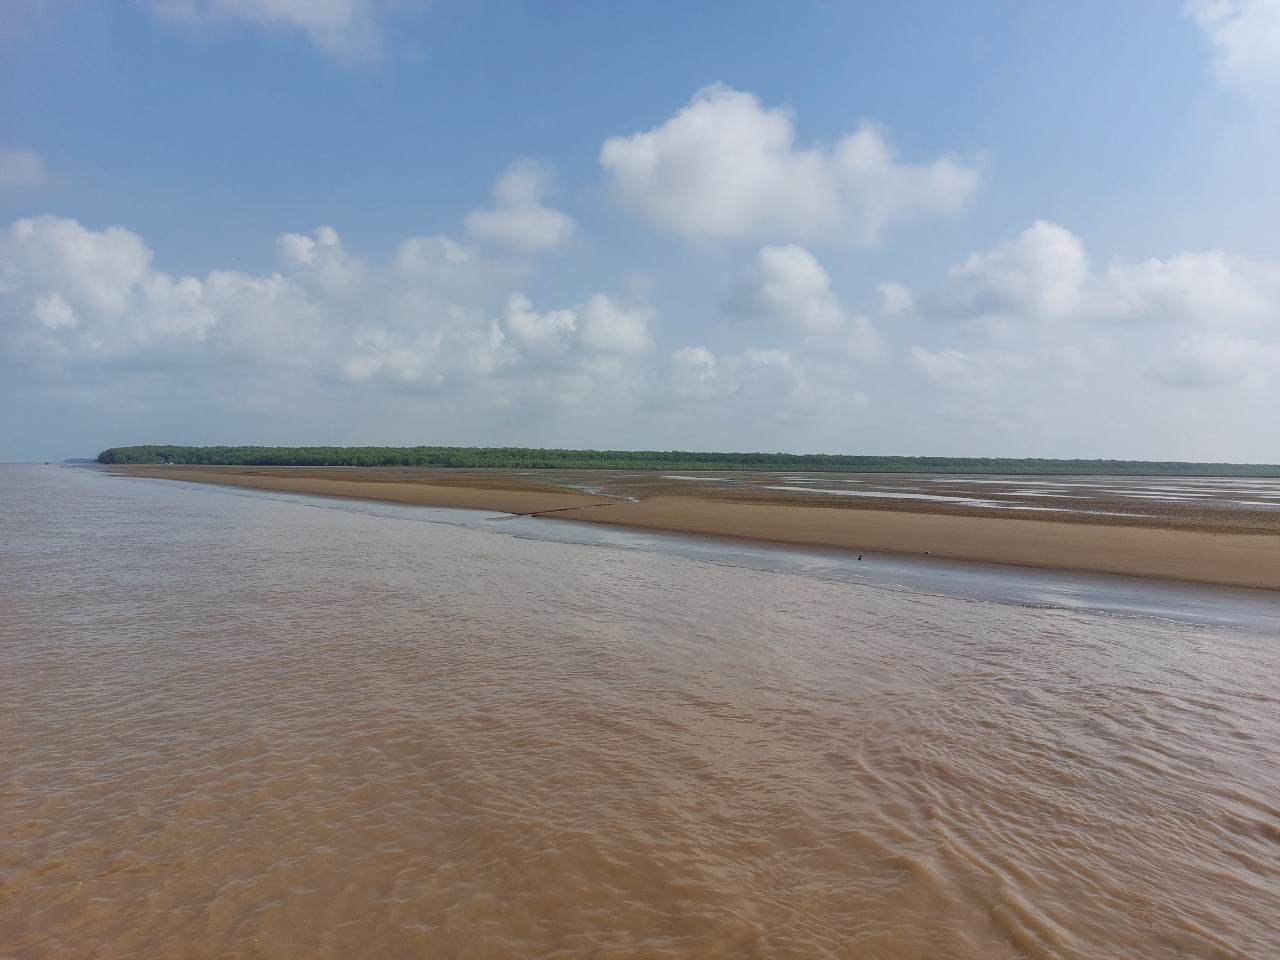 Tỉnh Sóc Trăng có nguồn cát biển khá lớn